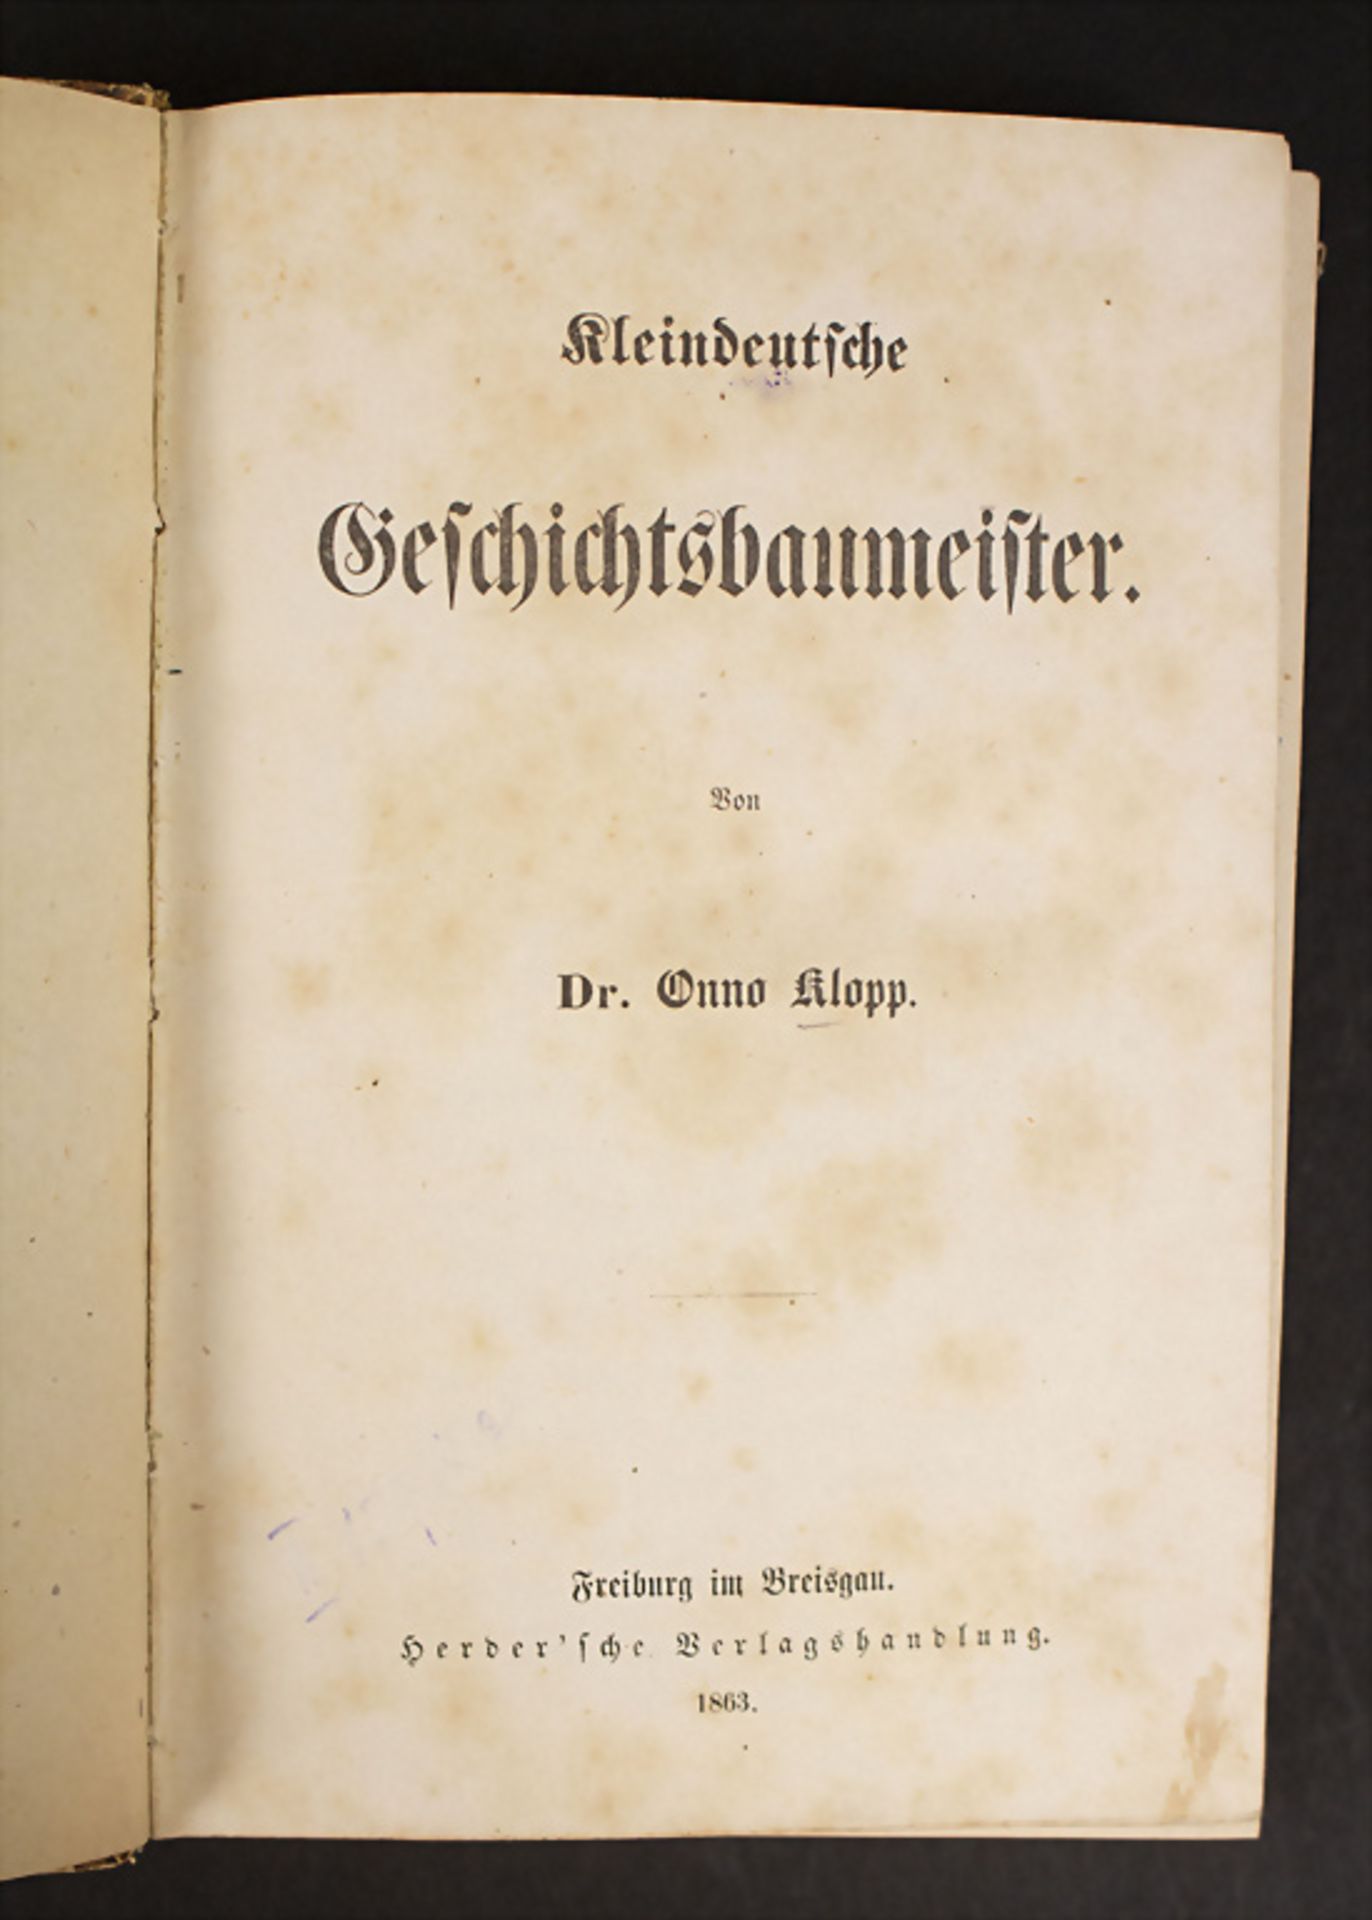 Dr. Onno Klopp: 'Kleindeutsche Geschichtsbaumeister',1863